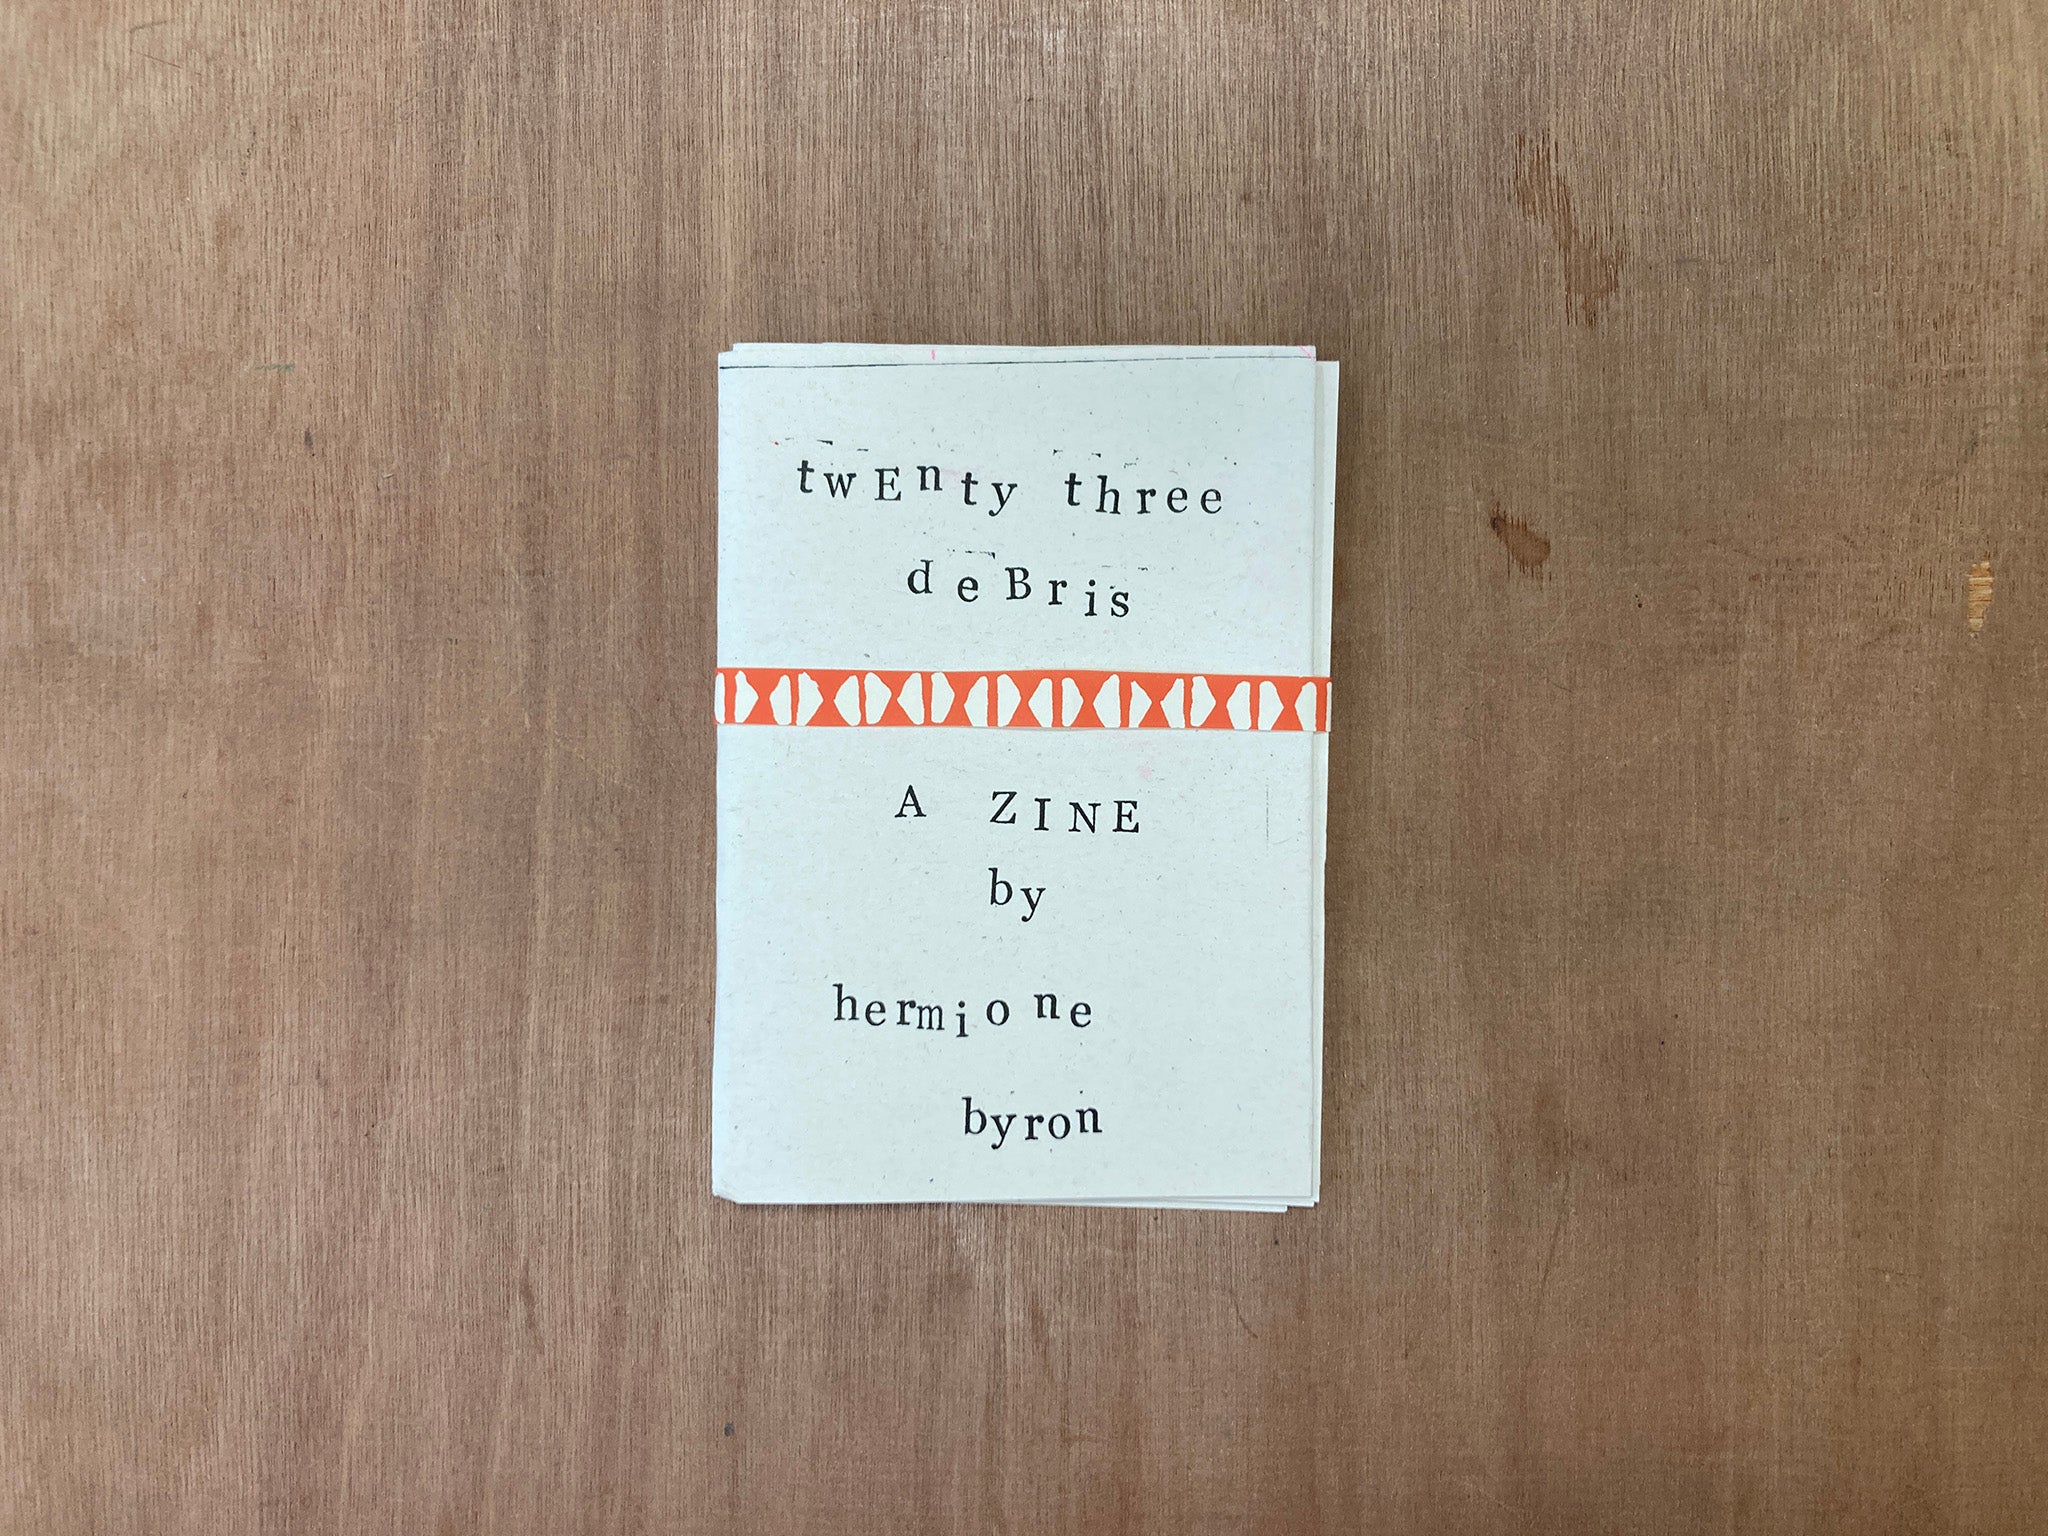 TWENTY-THREE DEBRIS by Hermione Byron